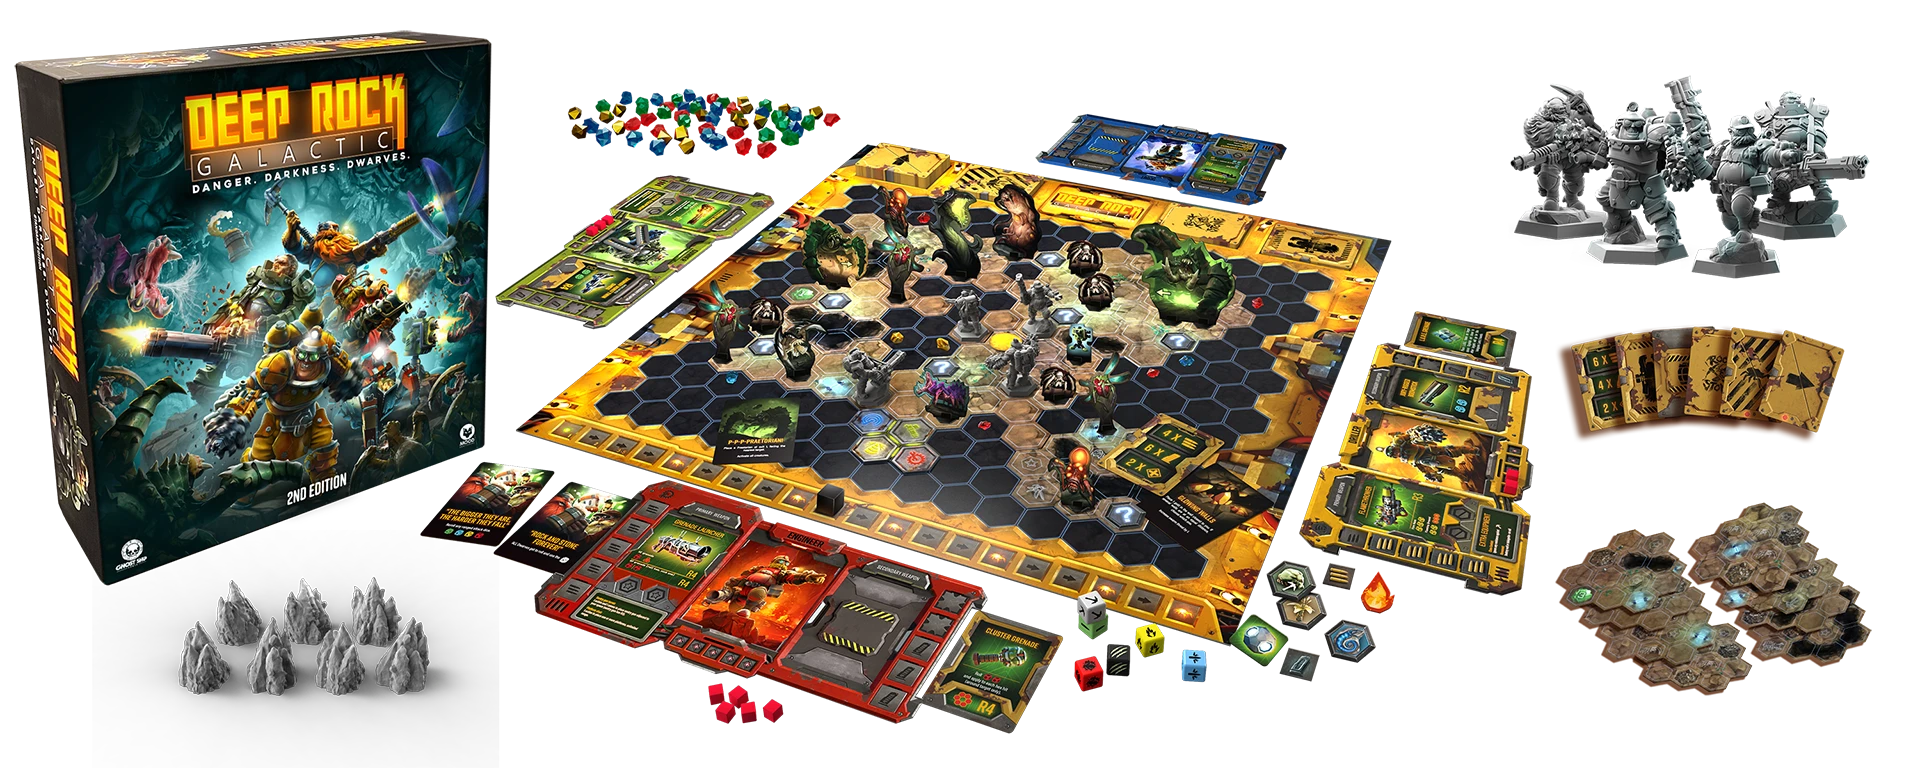 Deep Rock Galactic – the Board Game